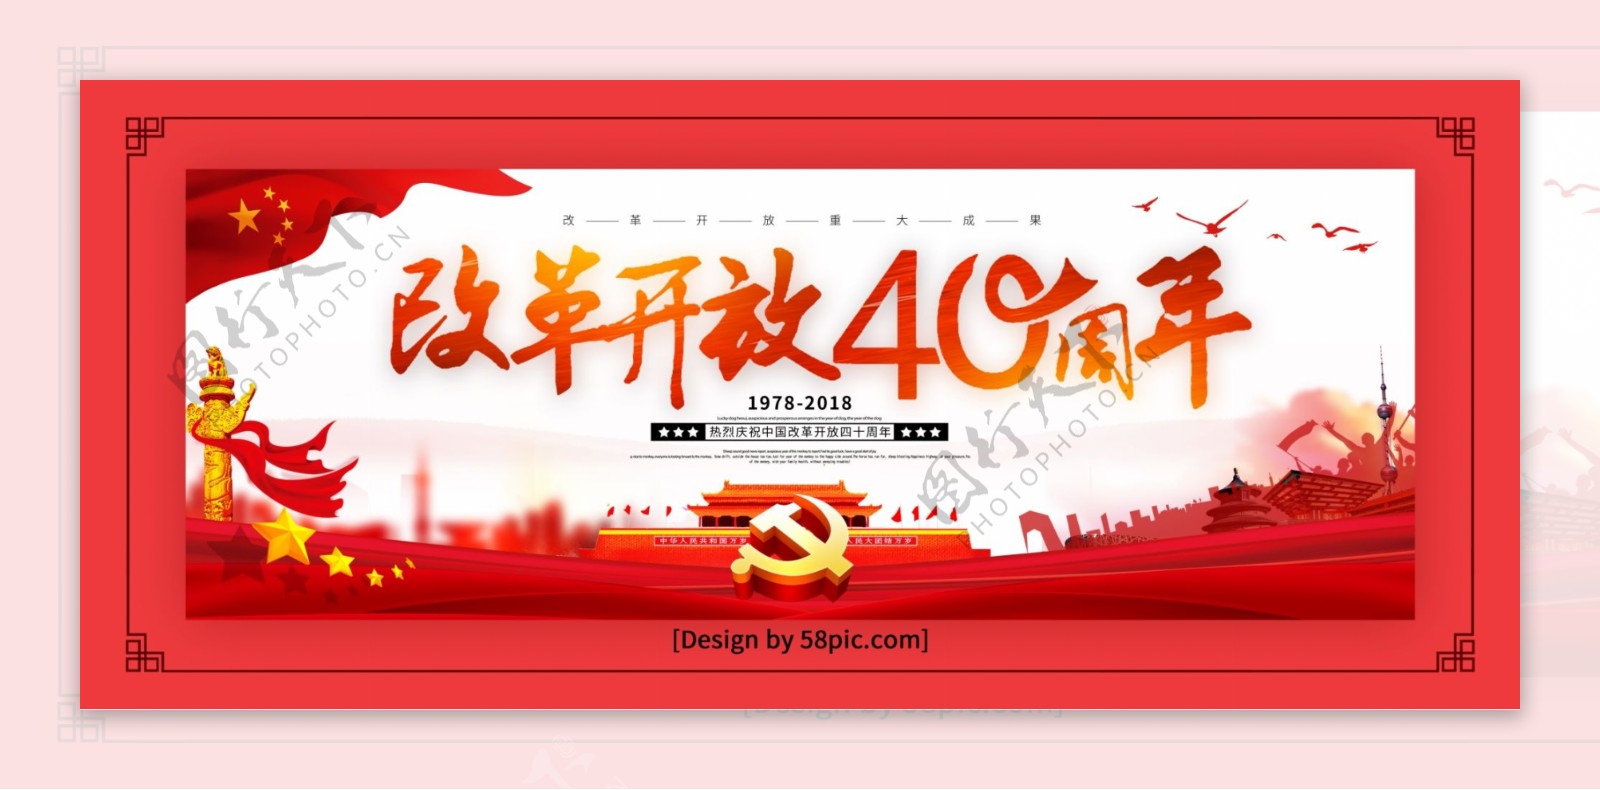 红色喜庆庆祝中国改革开放40周年党建展板